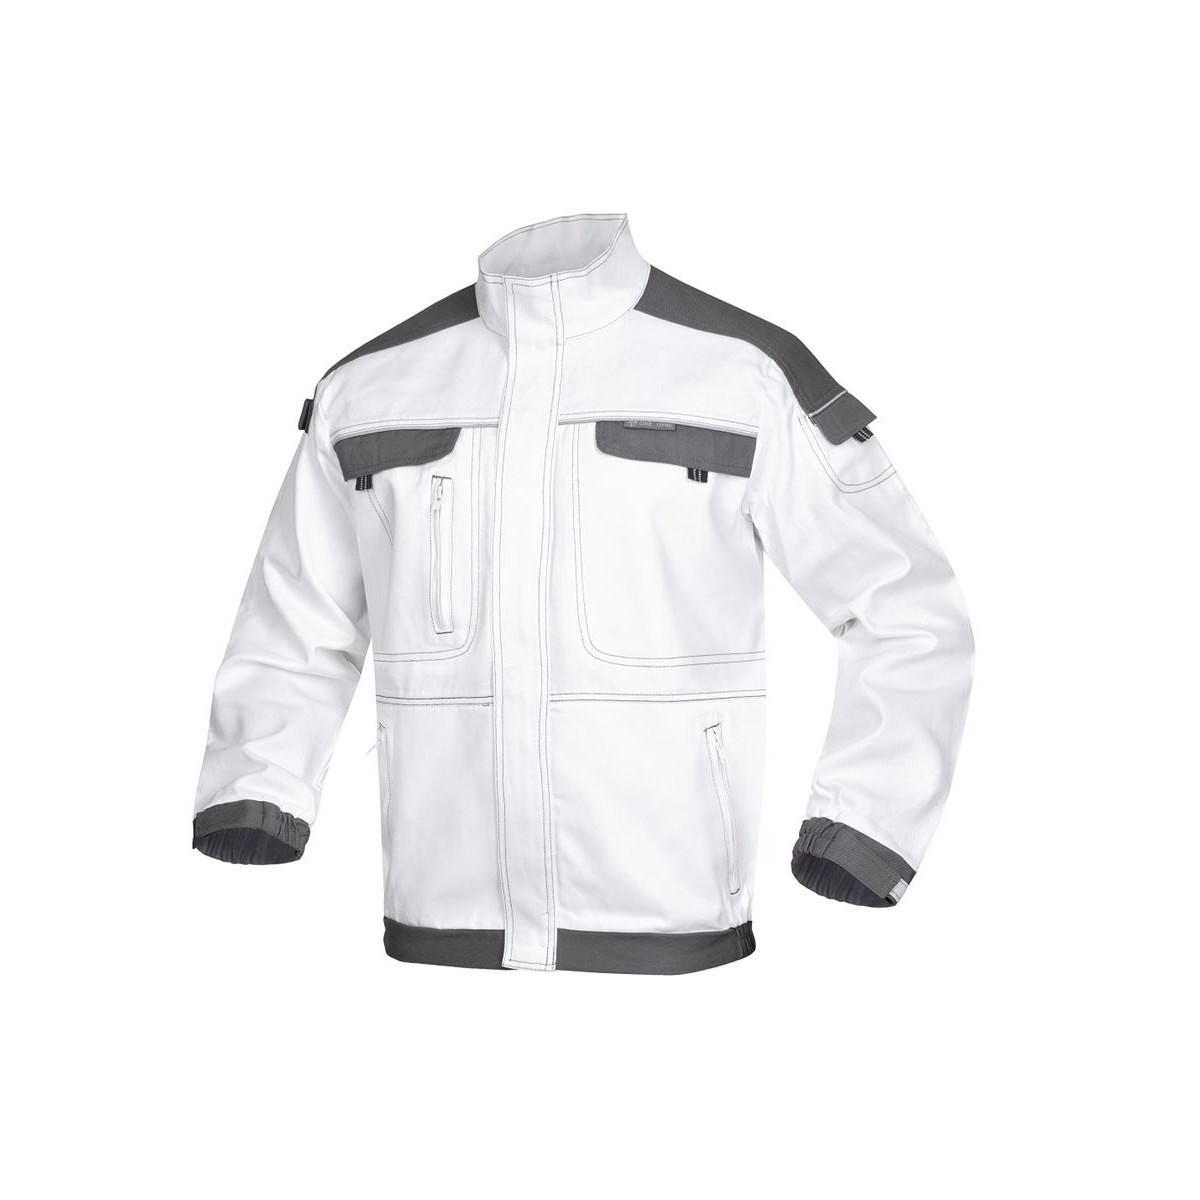 bluzy-robocze-bhp-hurtownia-internetowa - Bluza robocza bhp biało szara monterska odblaskowa cool trend H8800 Ardon Safety